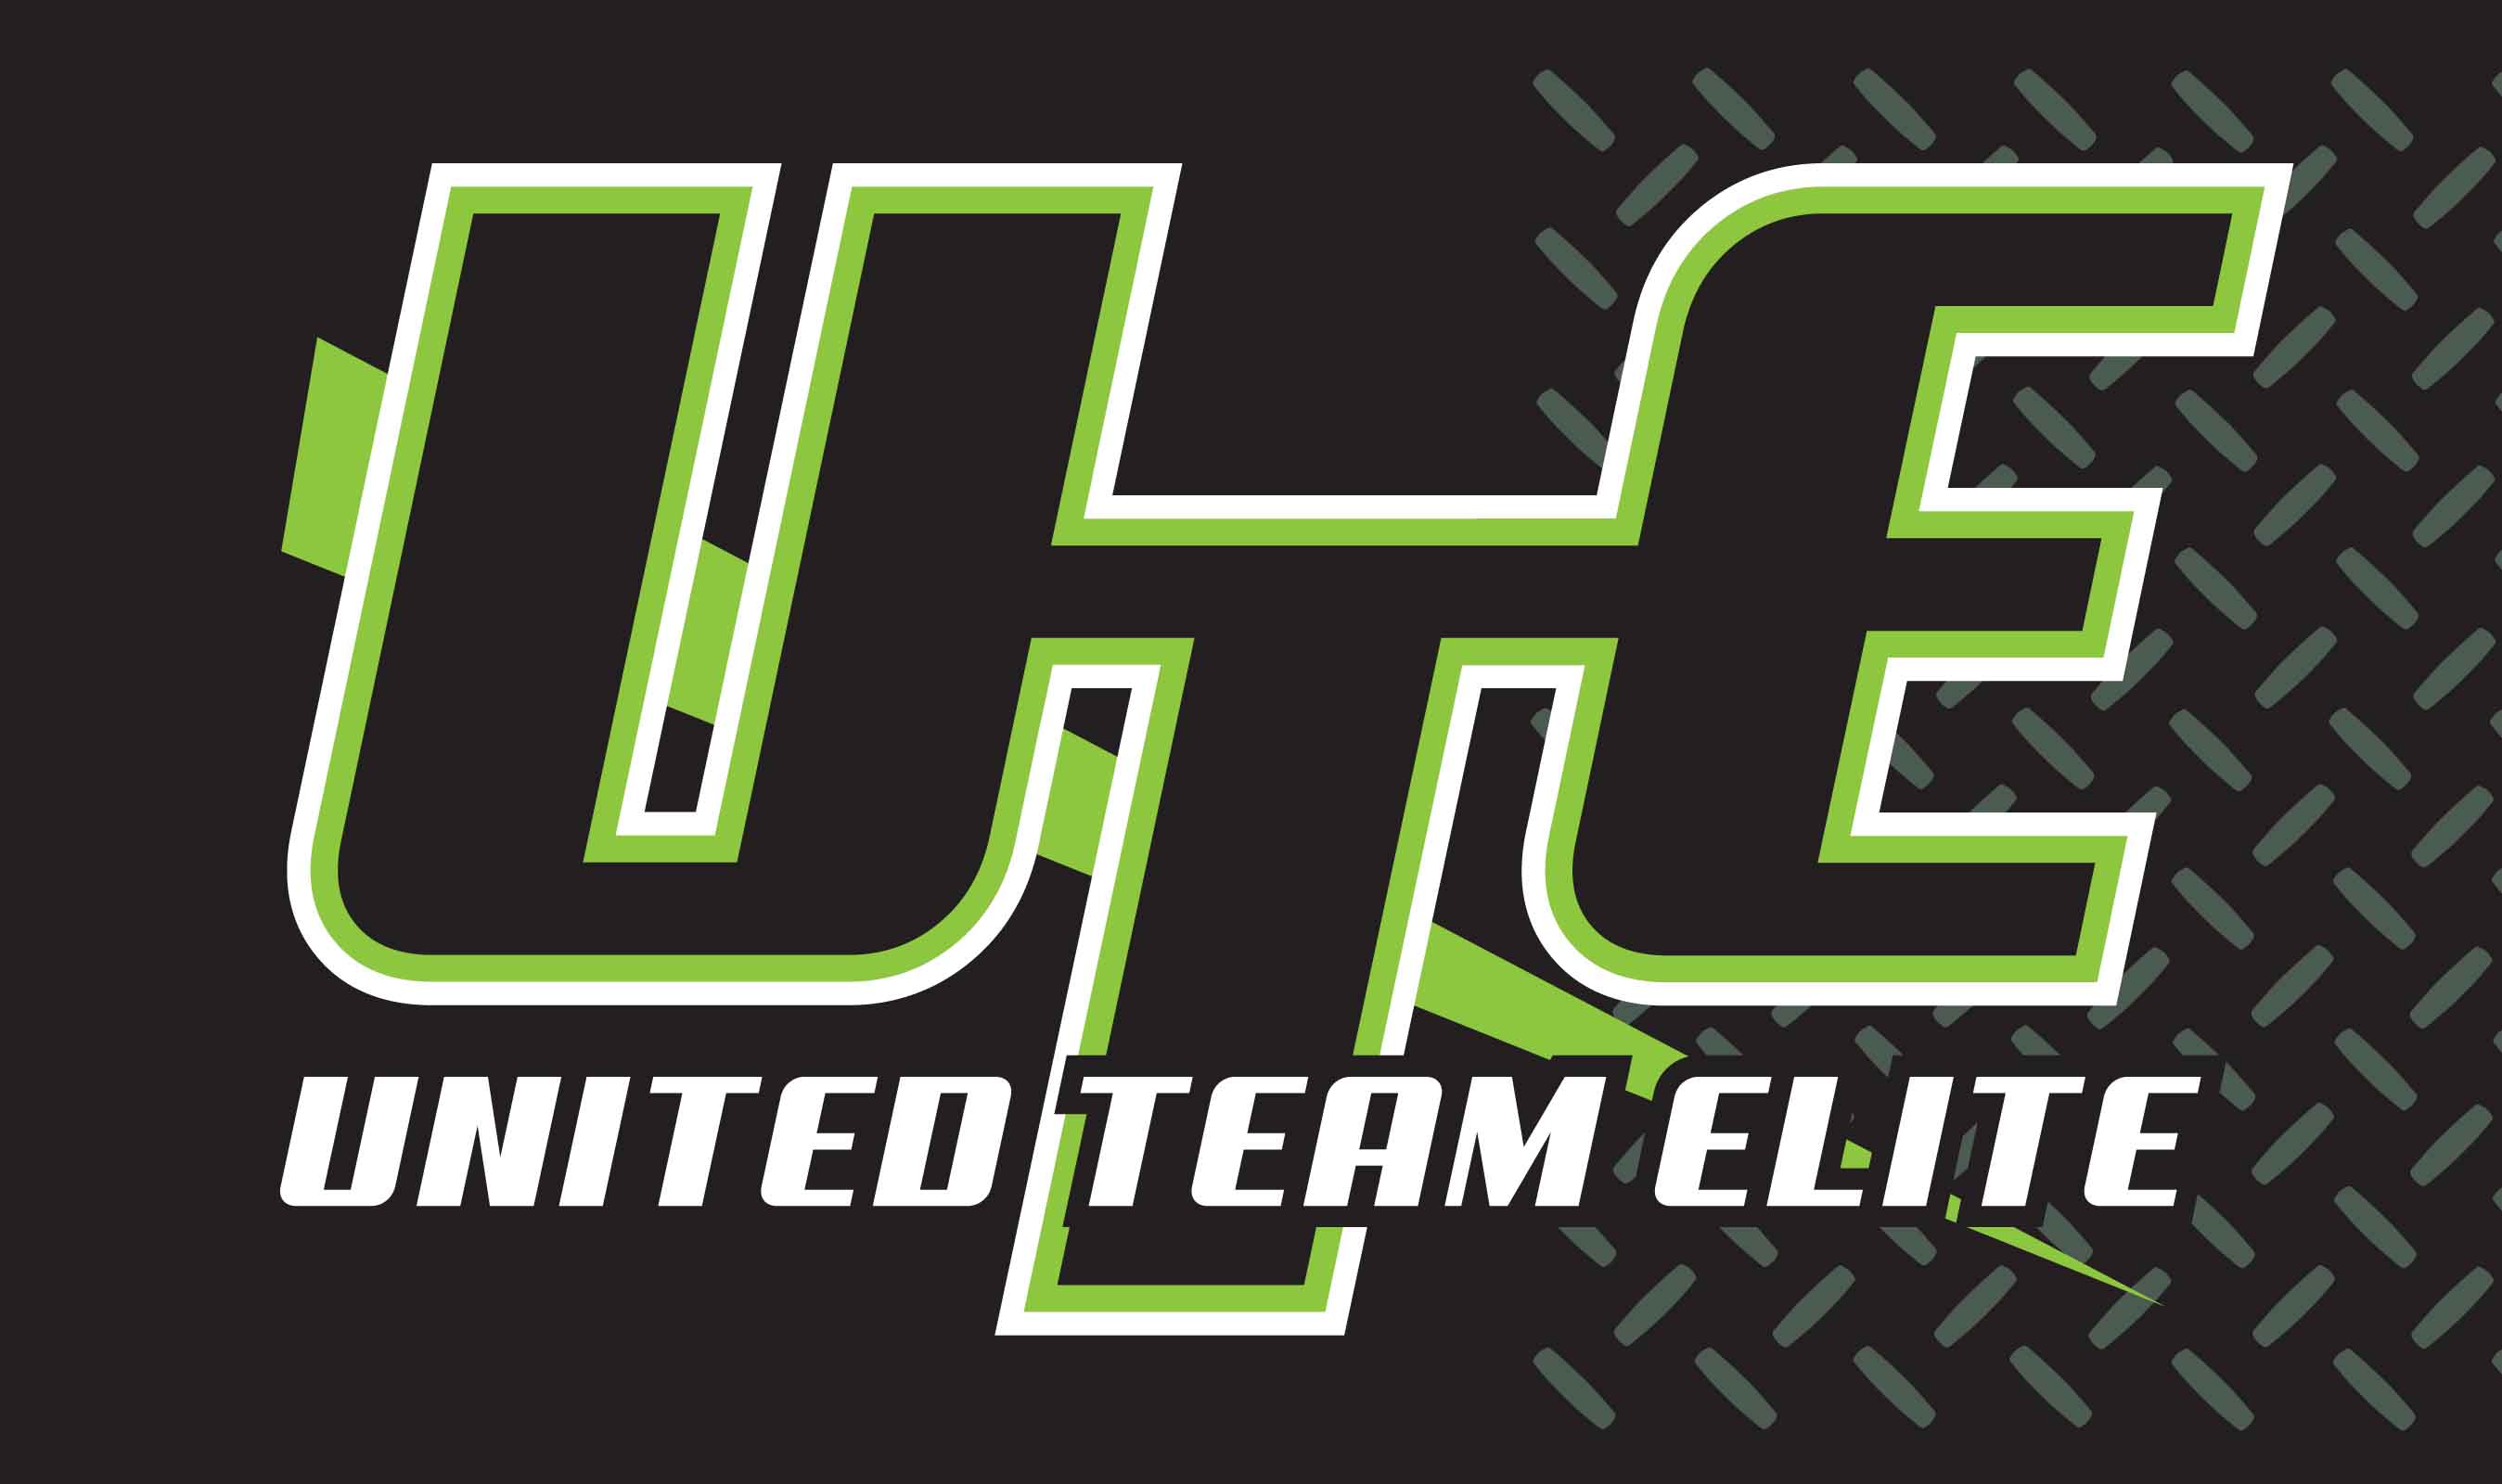 United Team Elite